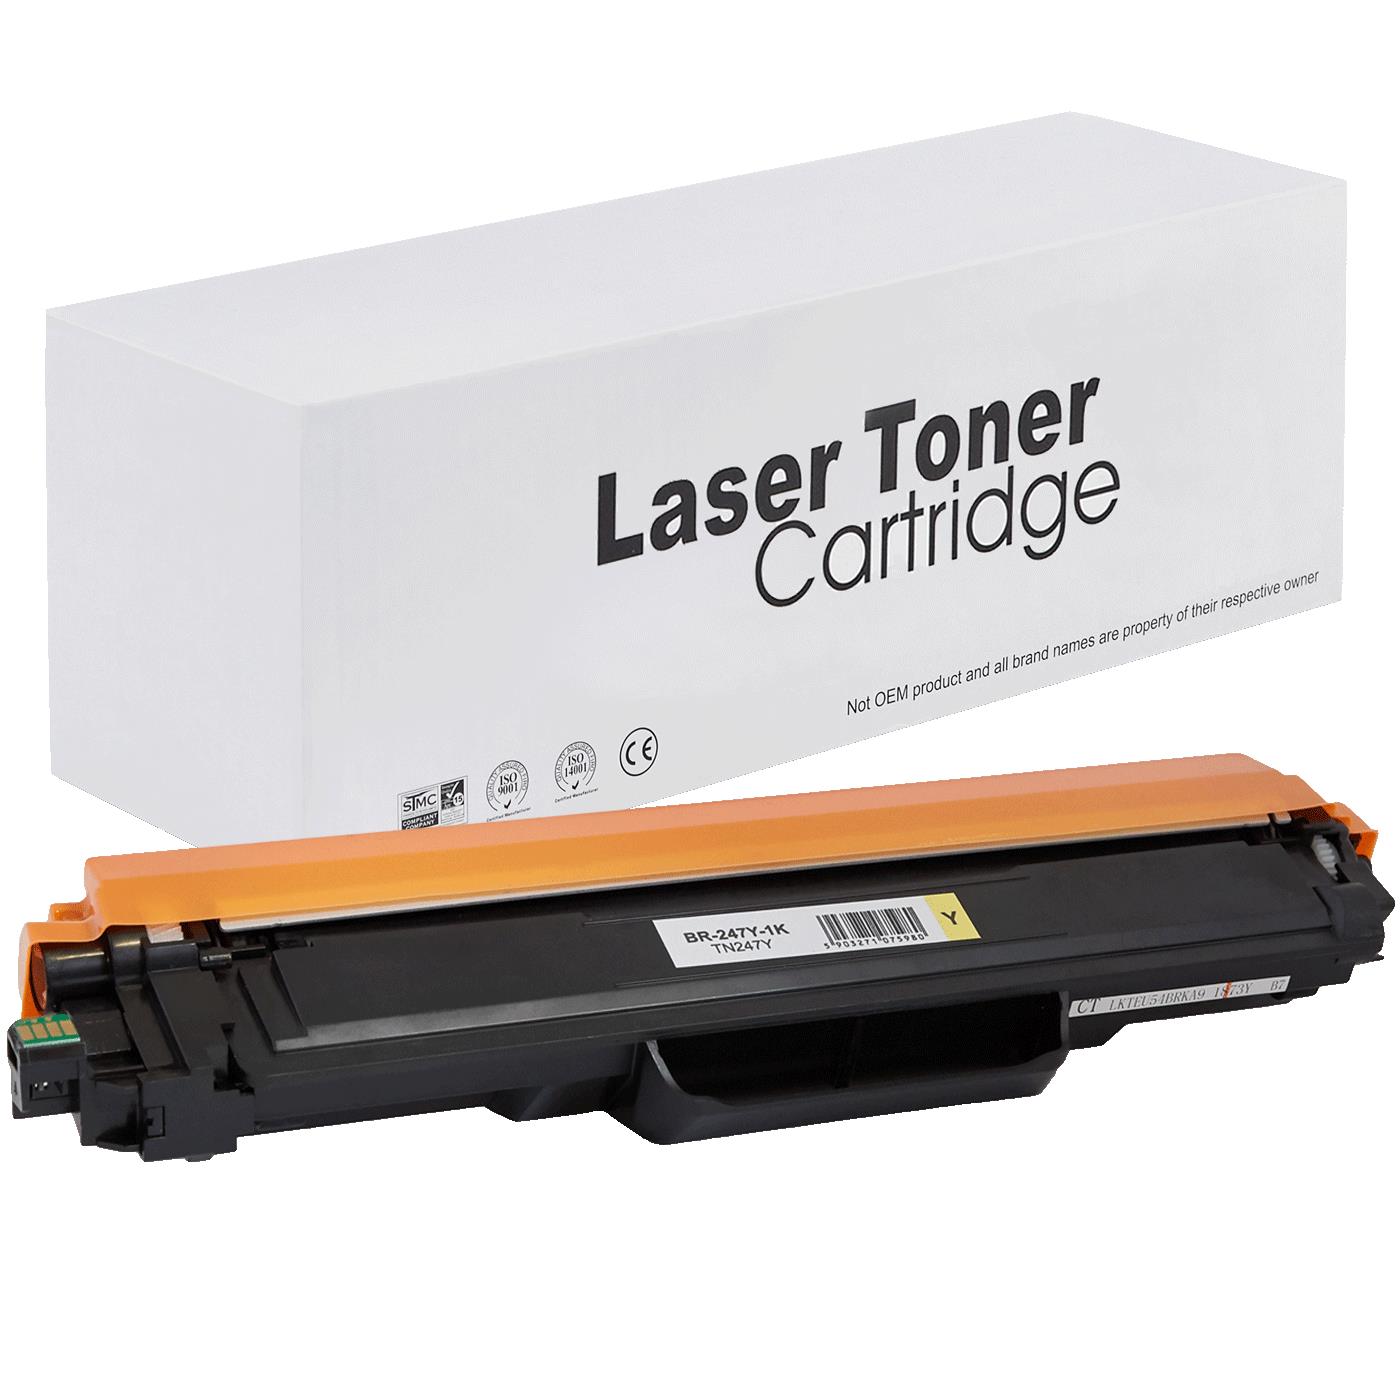 съвместима тонер касета за принтери и печатащи устройства на Brother DCP-L3550CDW Toner BR-247Y | TN247Y. Ниски цени, прецизно изпълнение, високо качество.